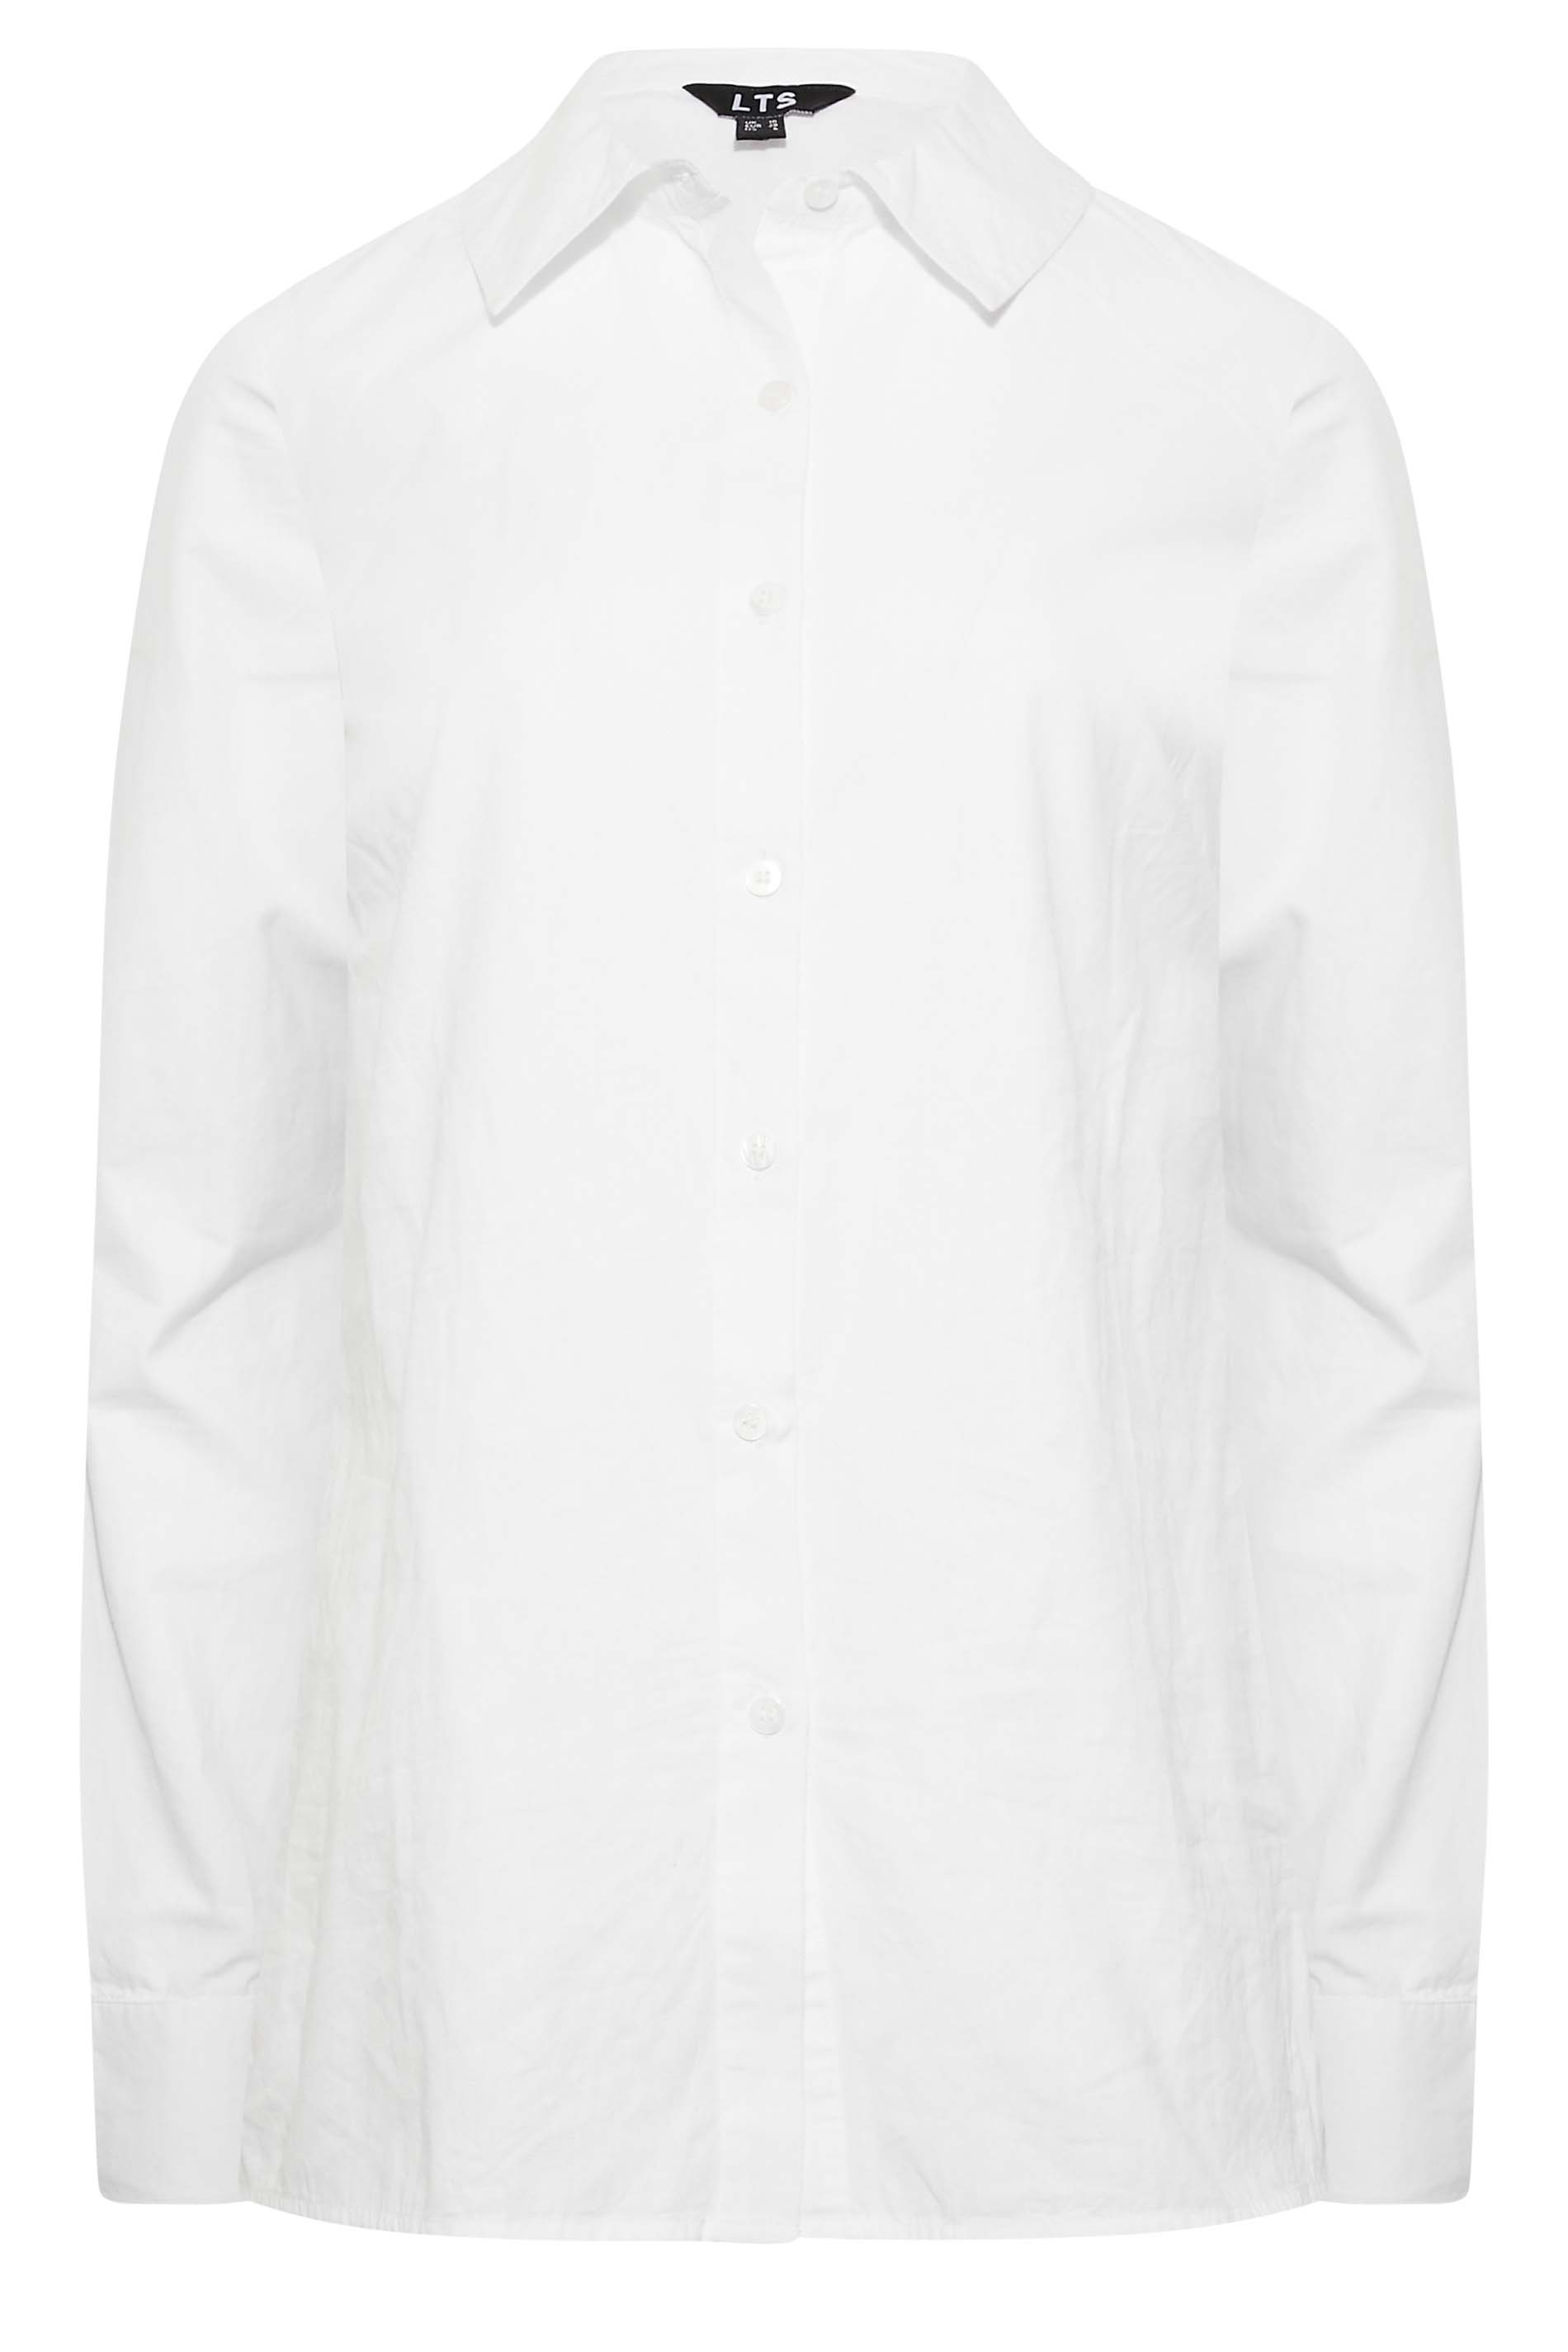 Tall Women's LTS White Cotton Shirt | Long Tall Sally  2